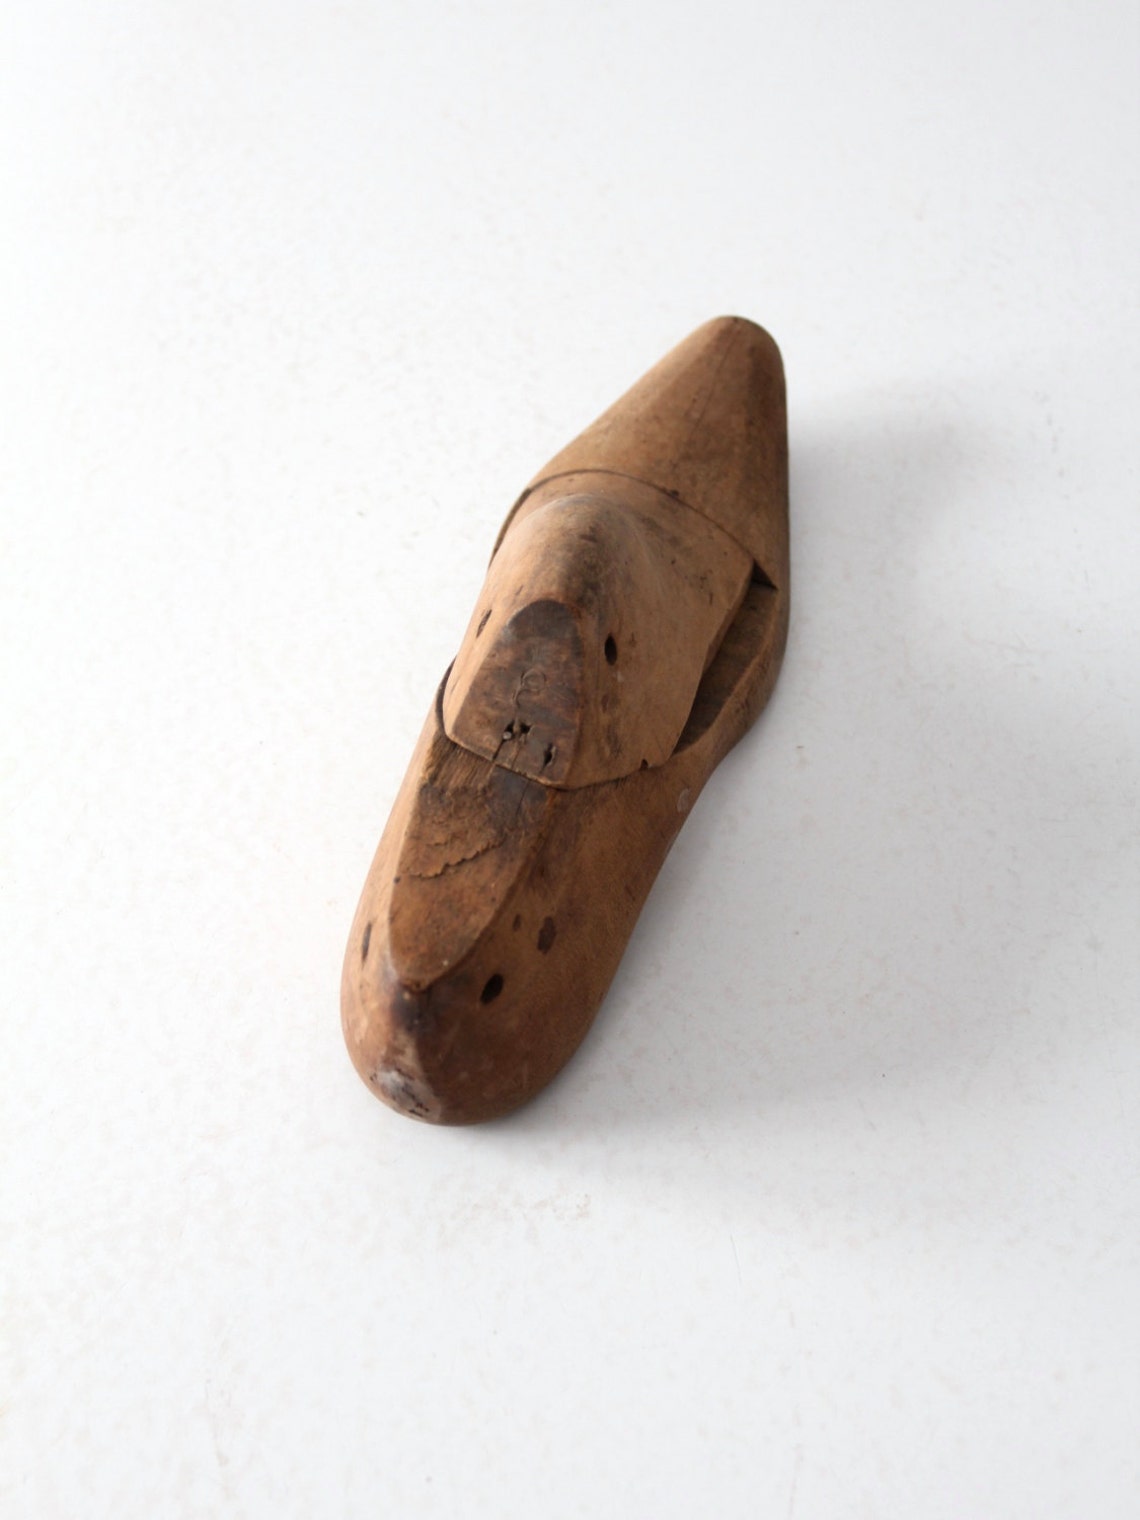 Antique Wood Shoe Form Wooden Cobbler's Foot Last | Etsy